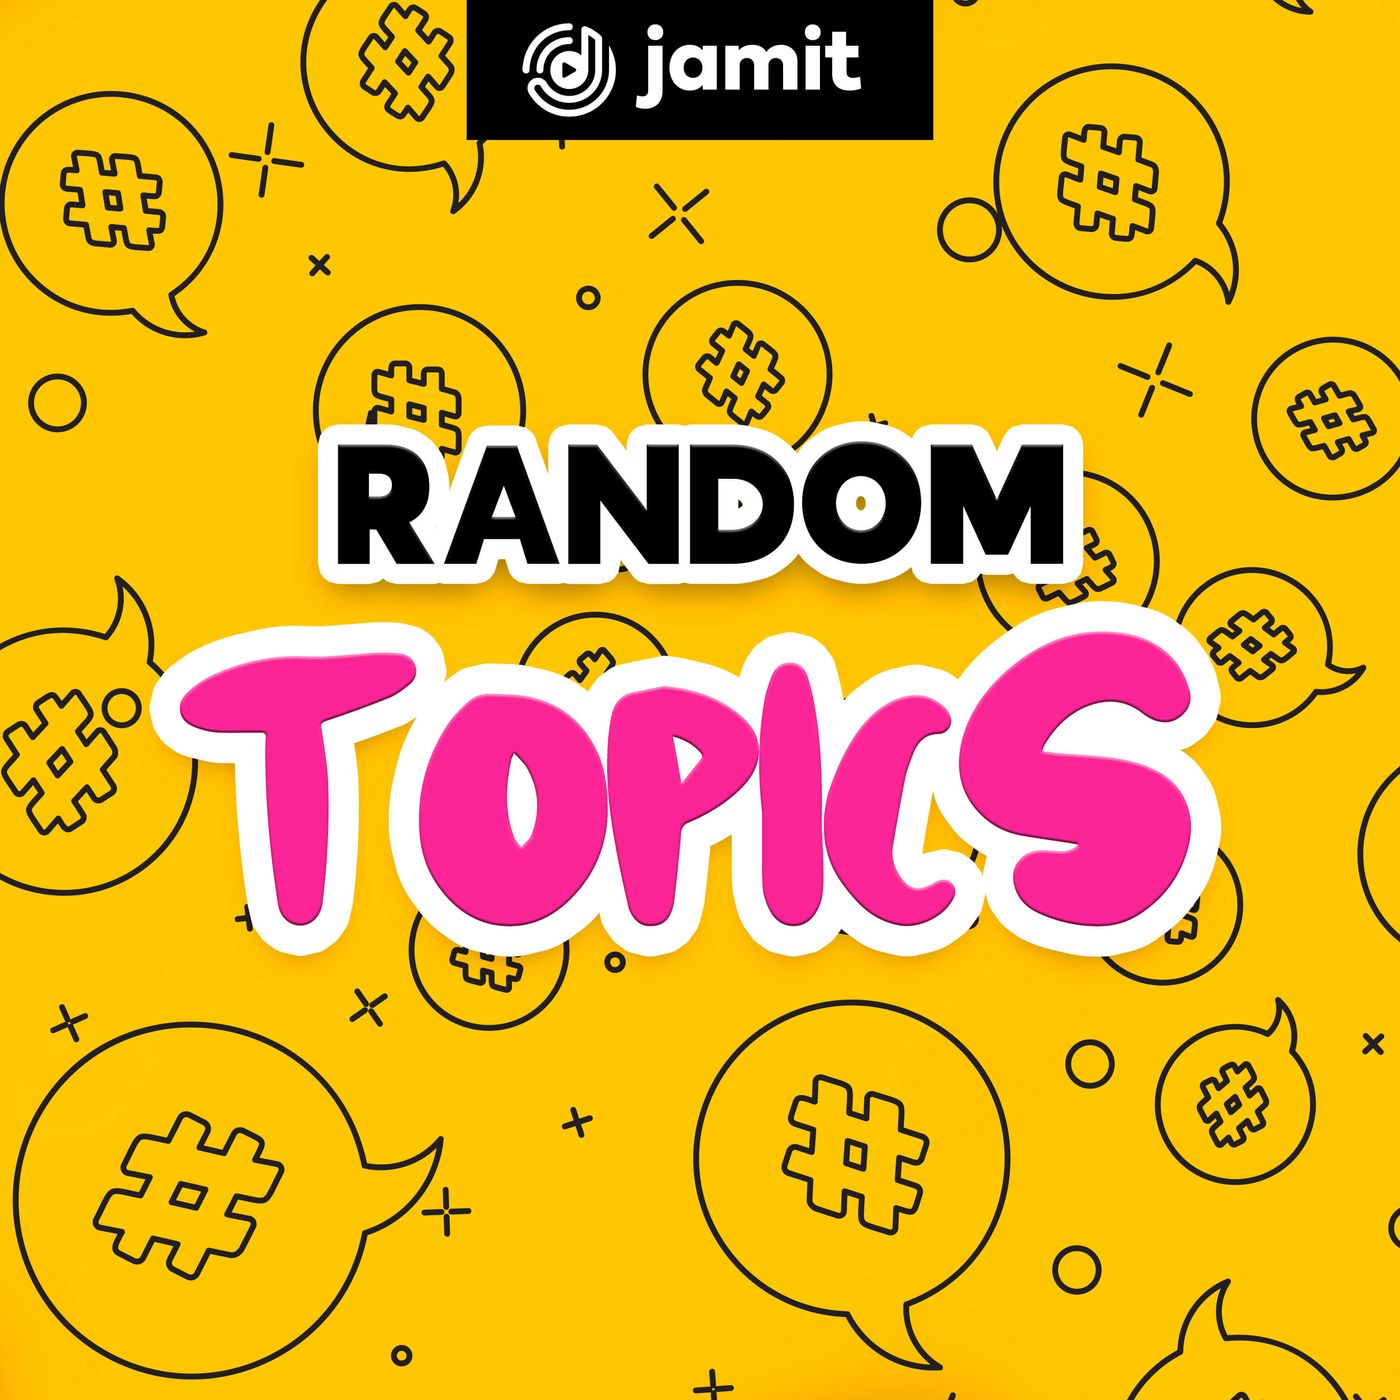 Random Topics on Jamit